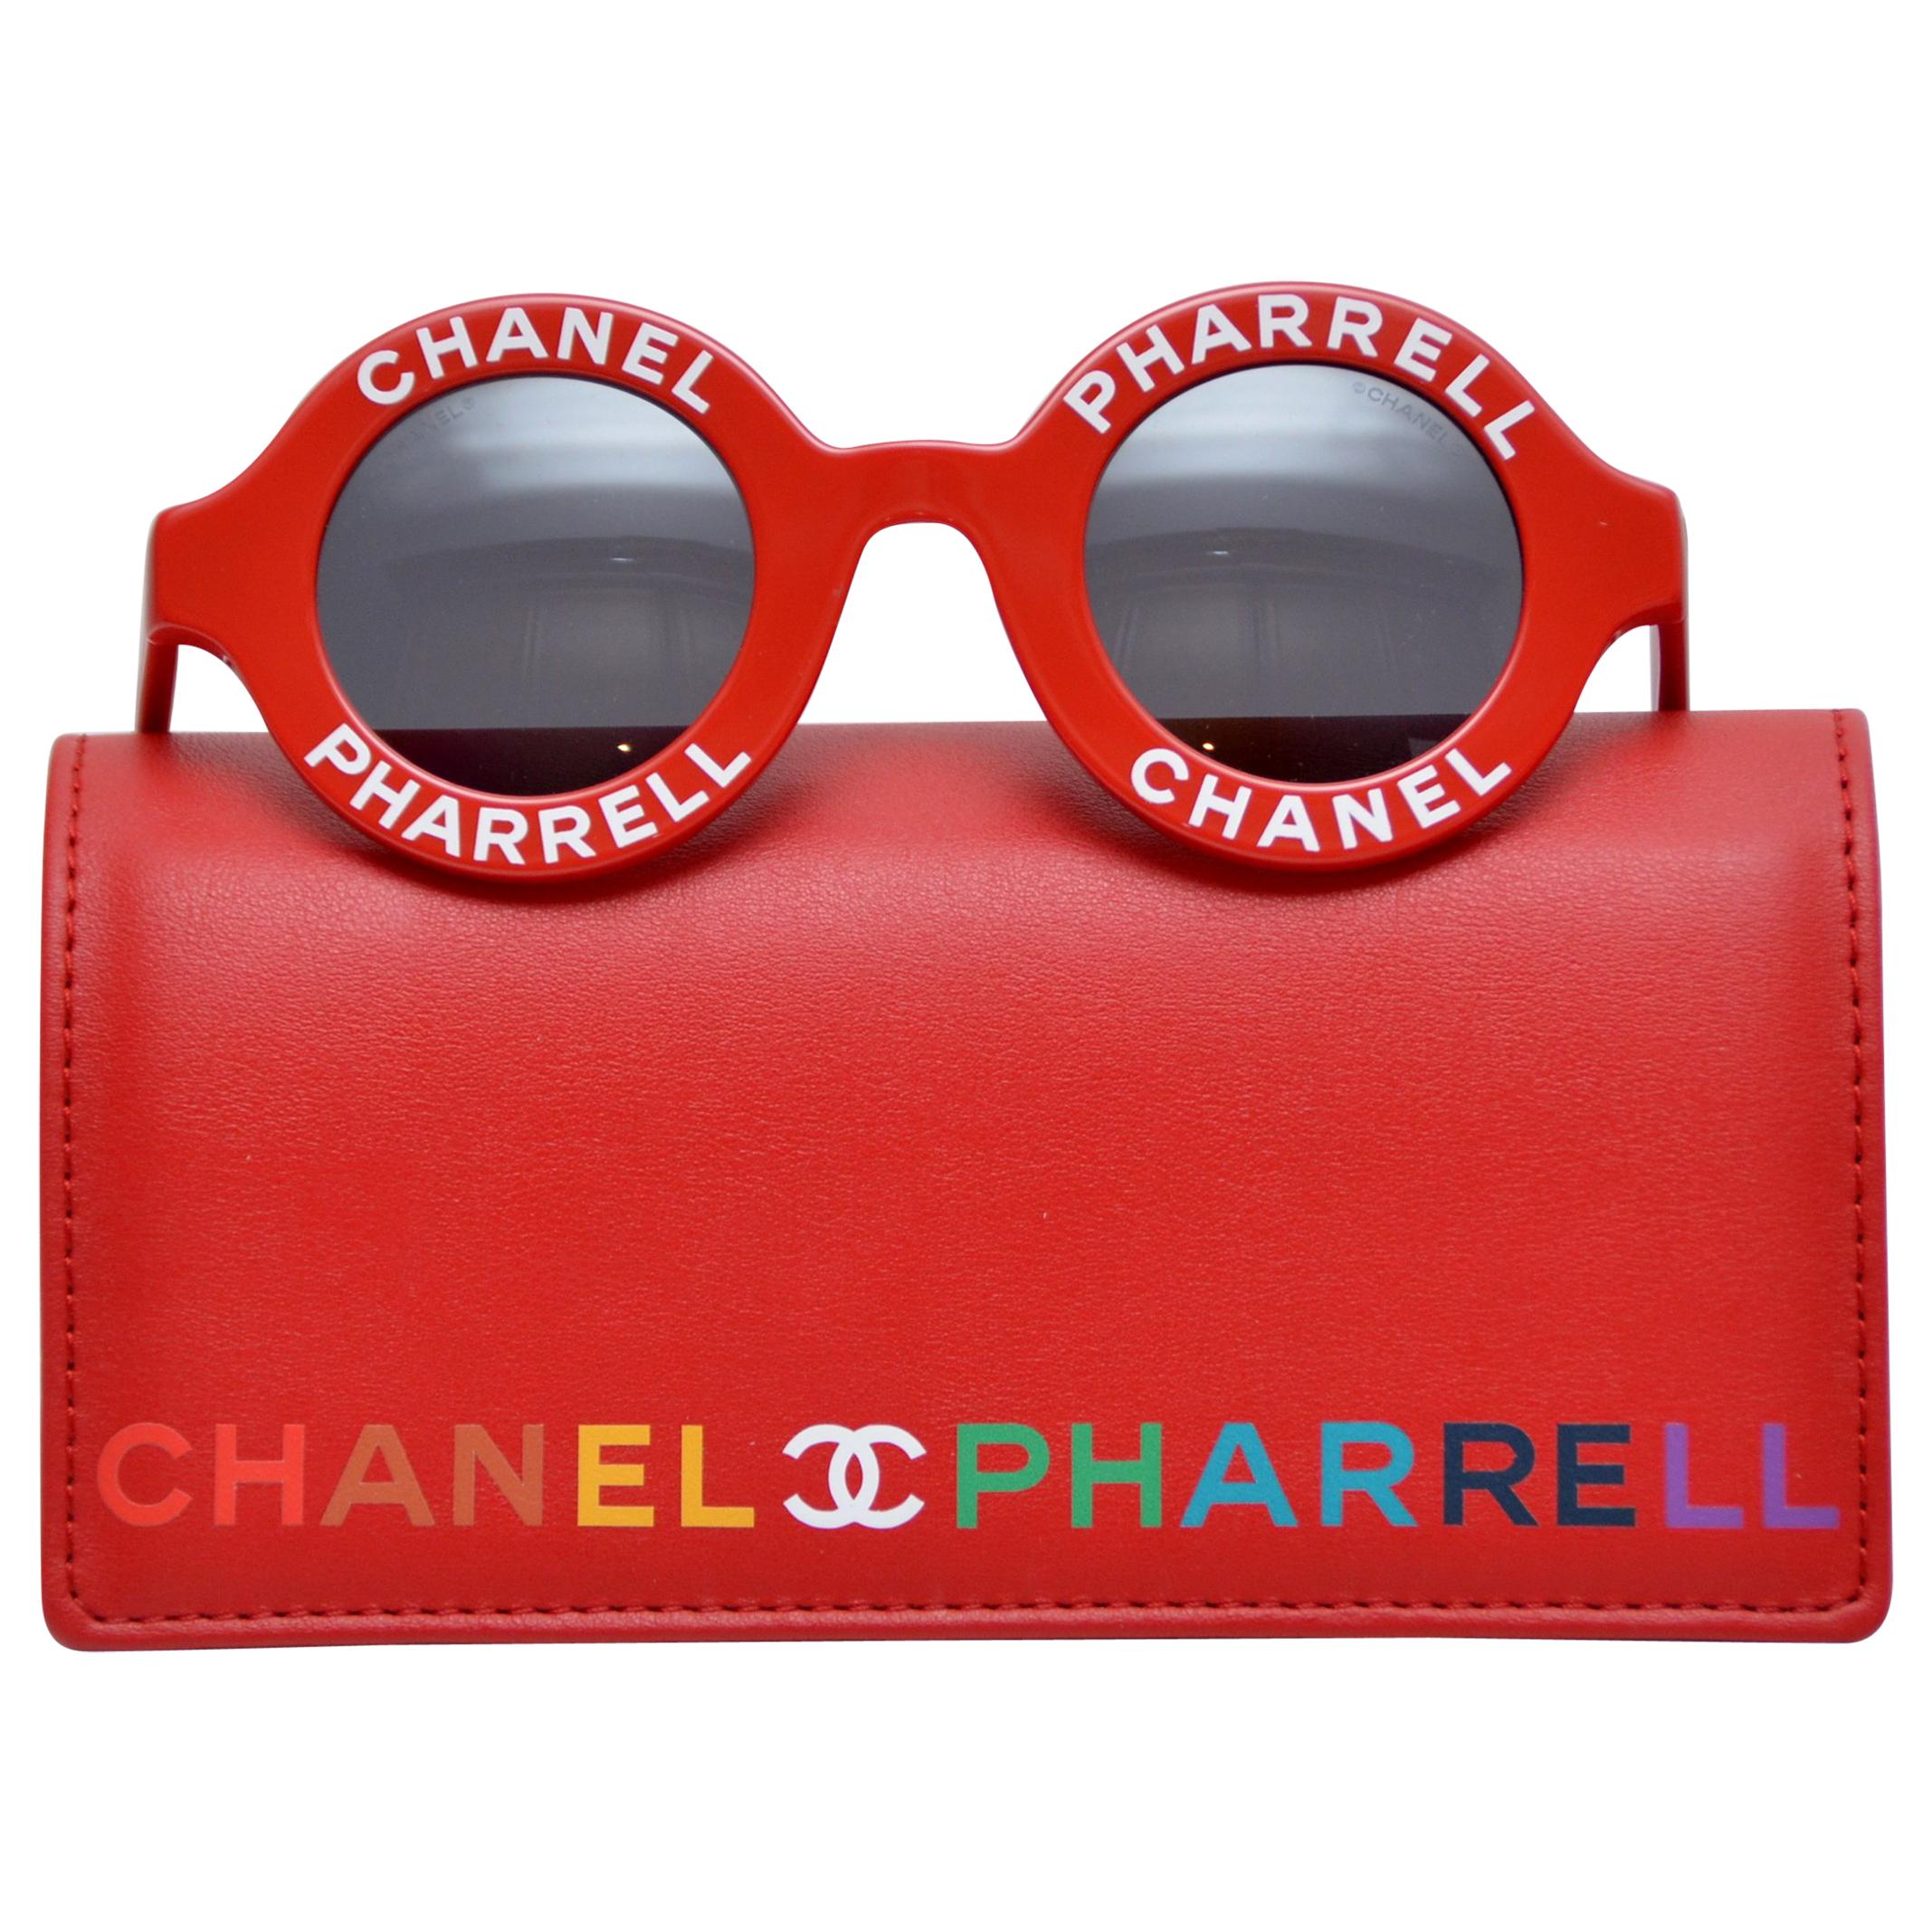 chanel pharrell glasses